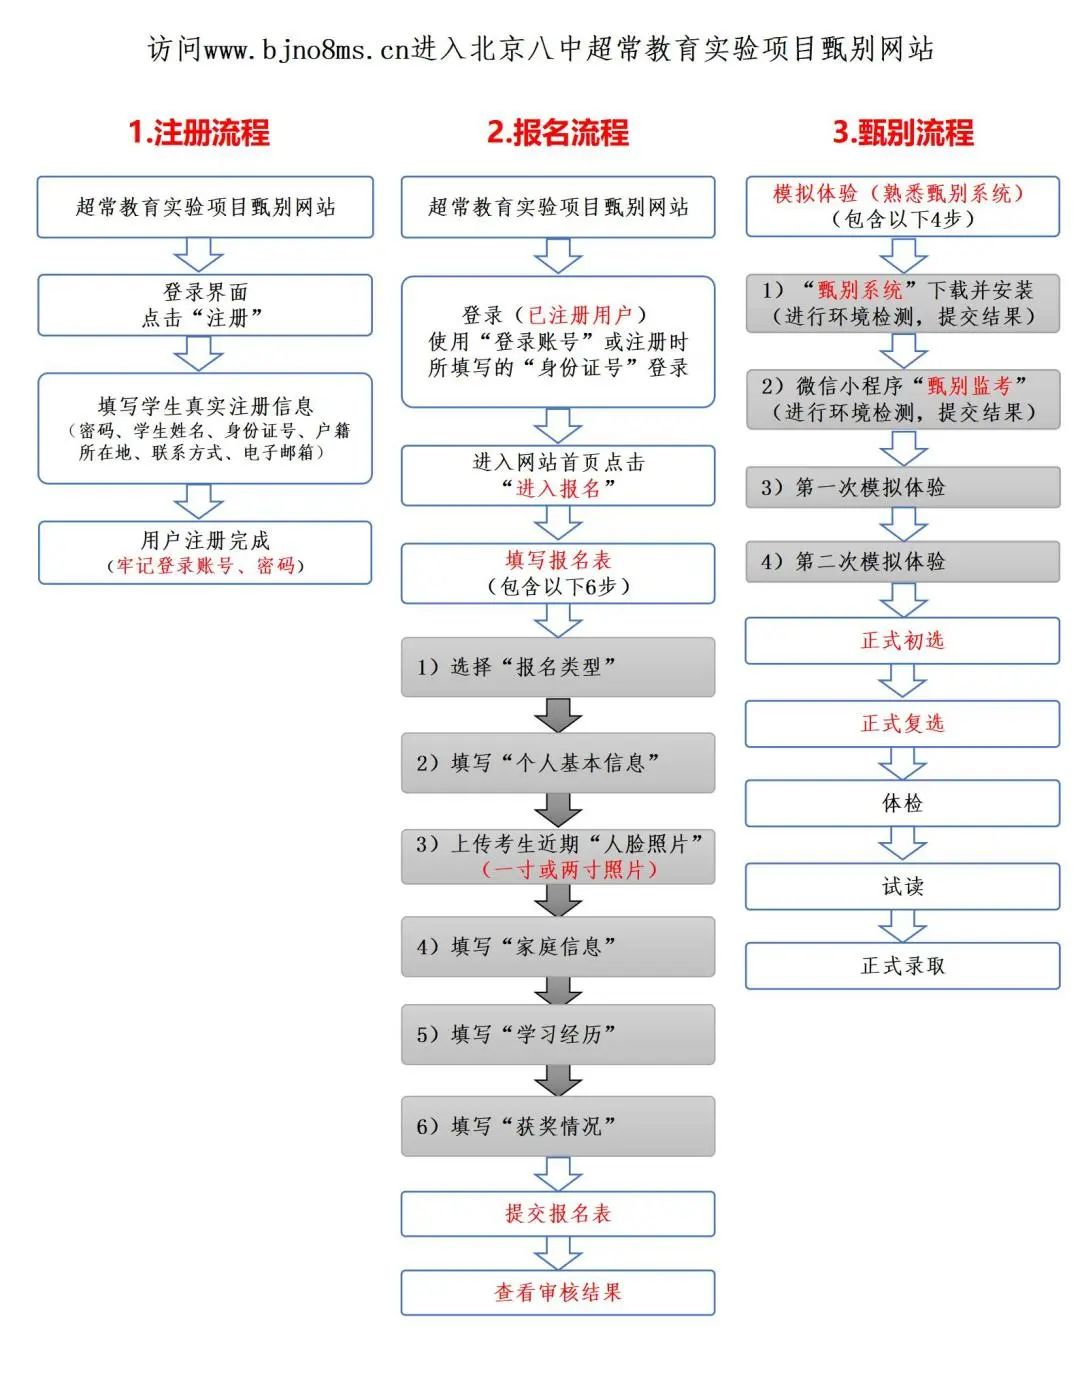 2022年北京八中超常教育实验项目招生流程图